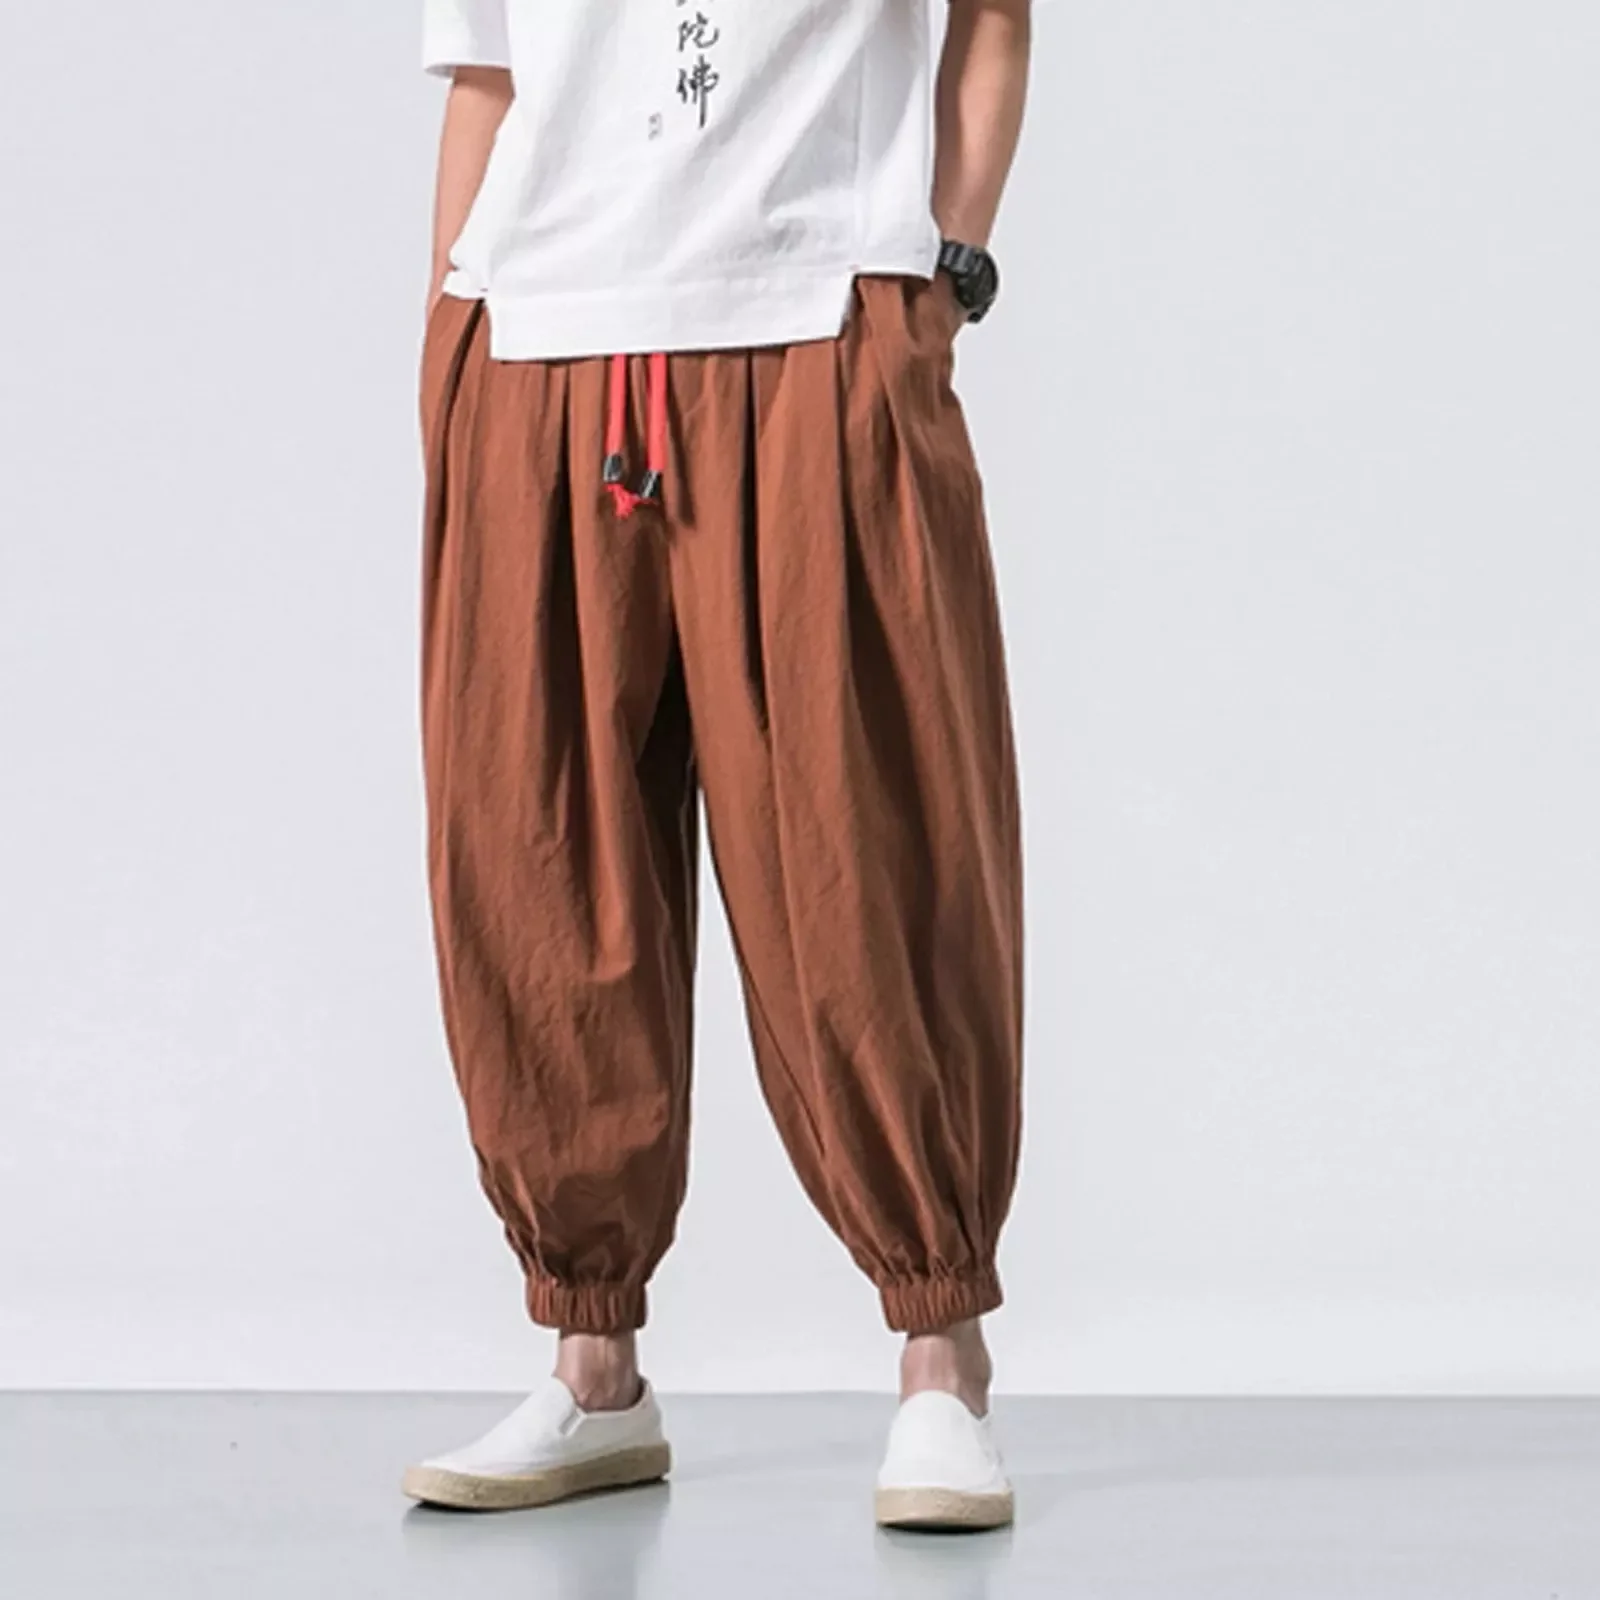 Solid Color Harem Pants Wide Leg Elasticated Pants Casual Cotton Linen Trouser Man Jogger Pants Fashion Casual Loose